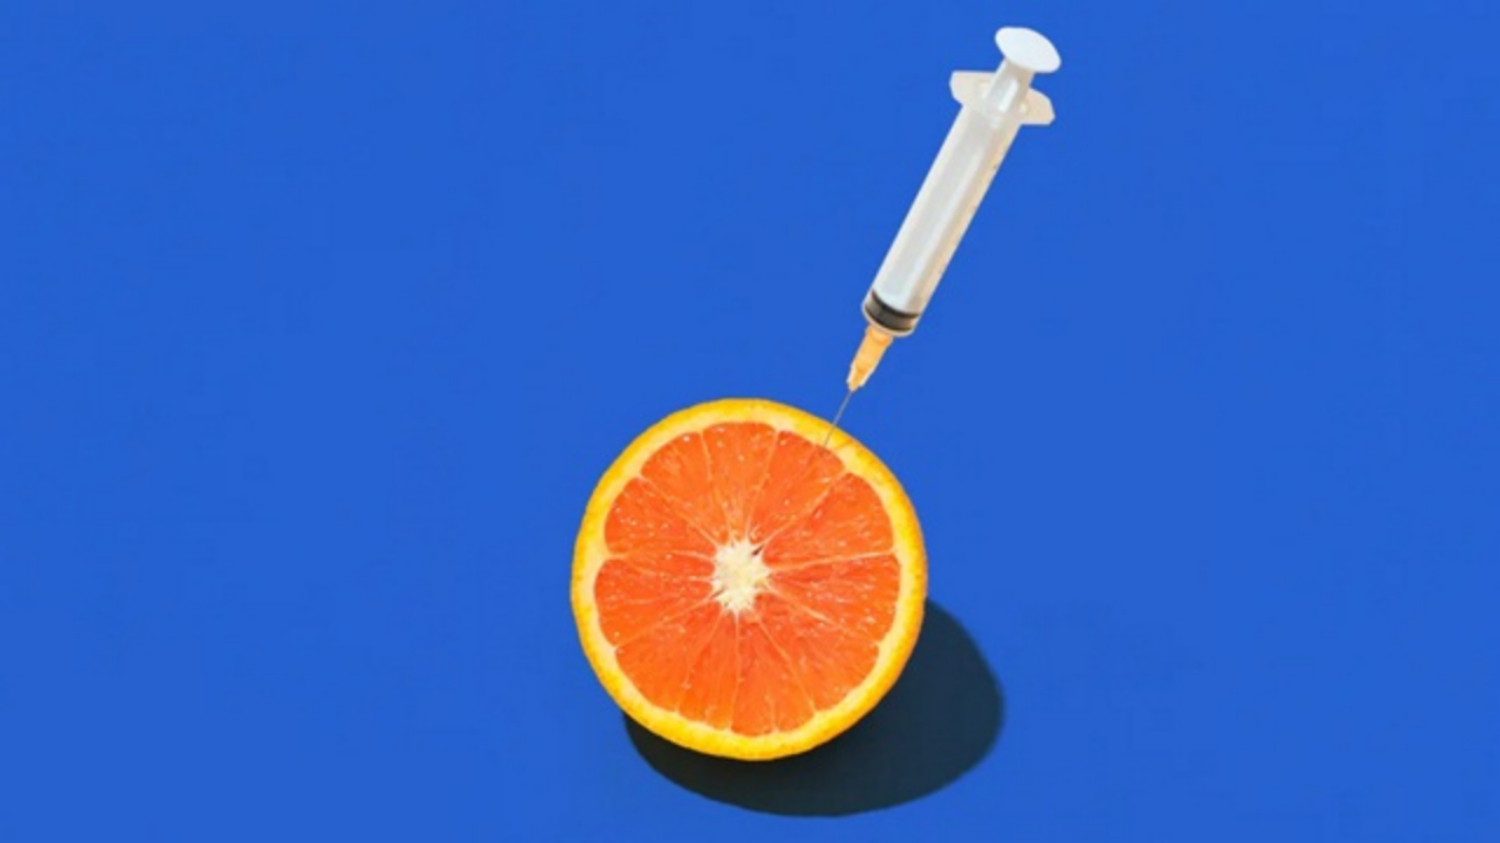 Cách tiêm vitamin C ảnh hưởng đến hiệu quả của nó có đúng không?
